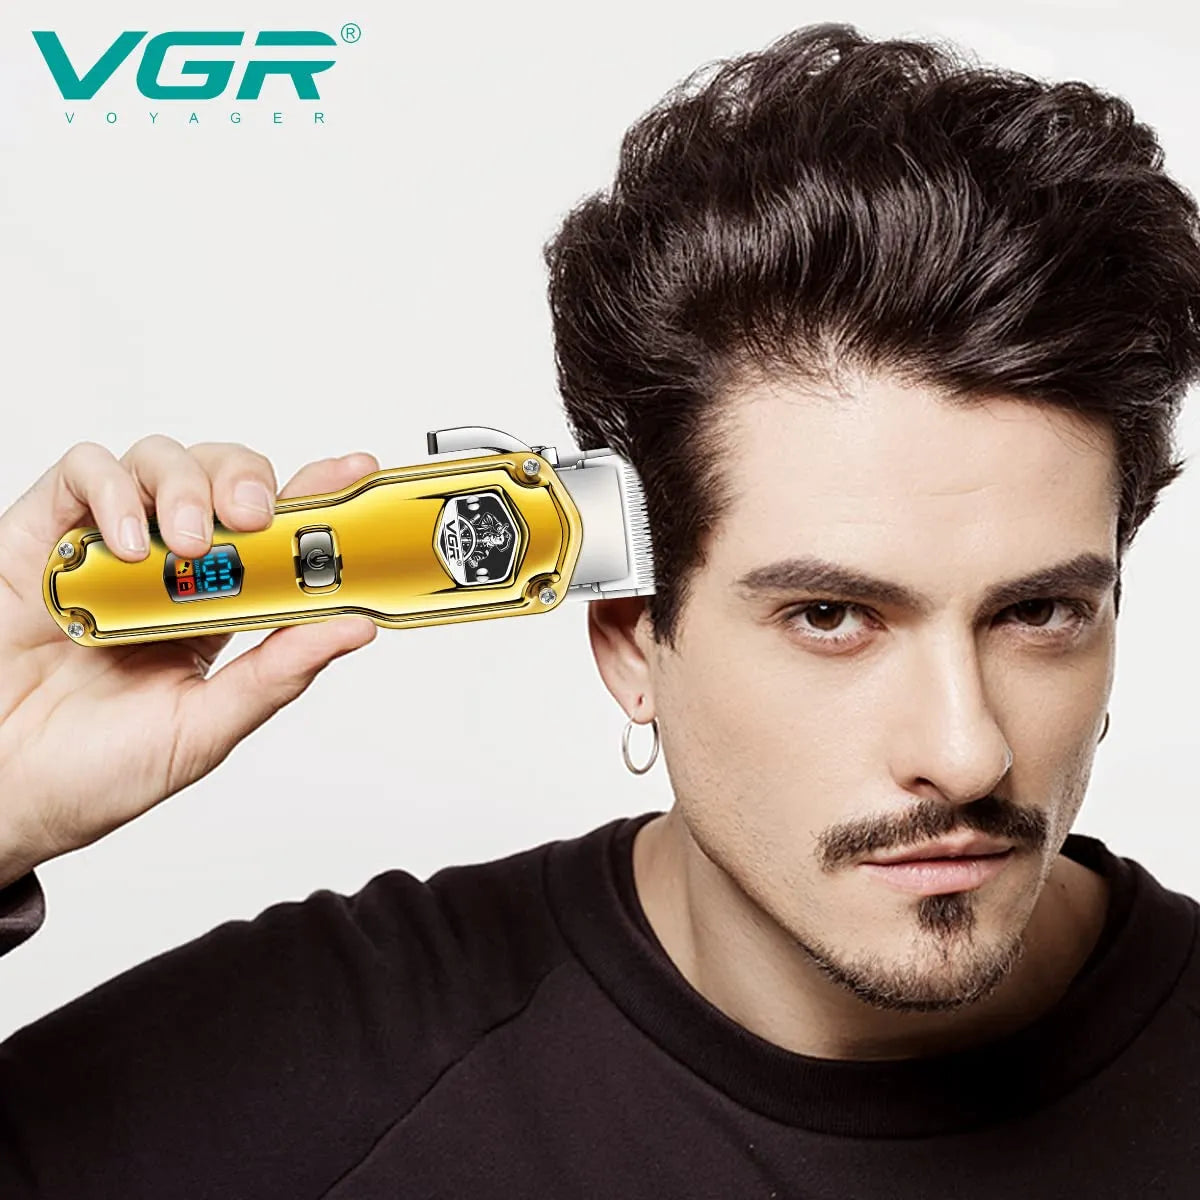 VGR V-693 Hair Clipper For Men, Gold